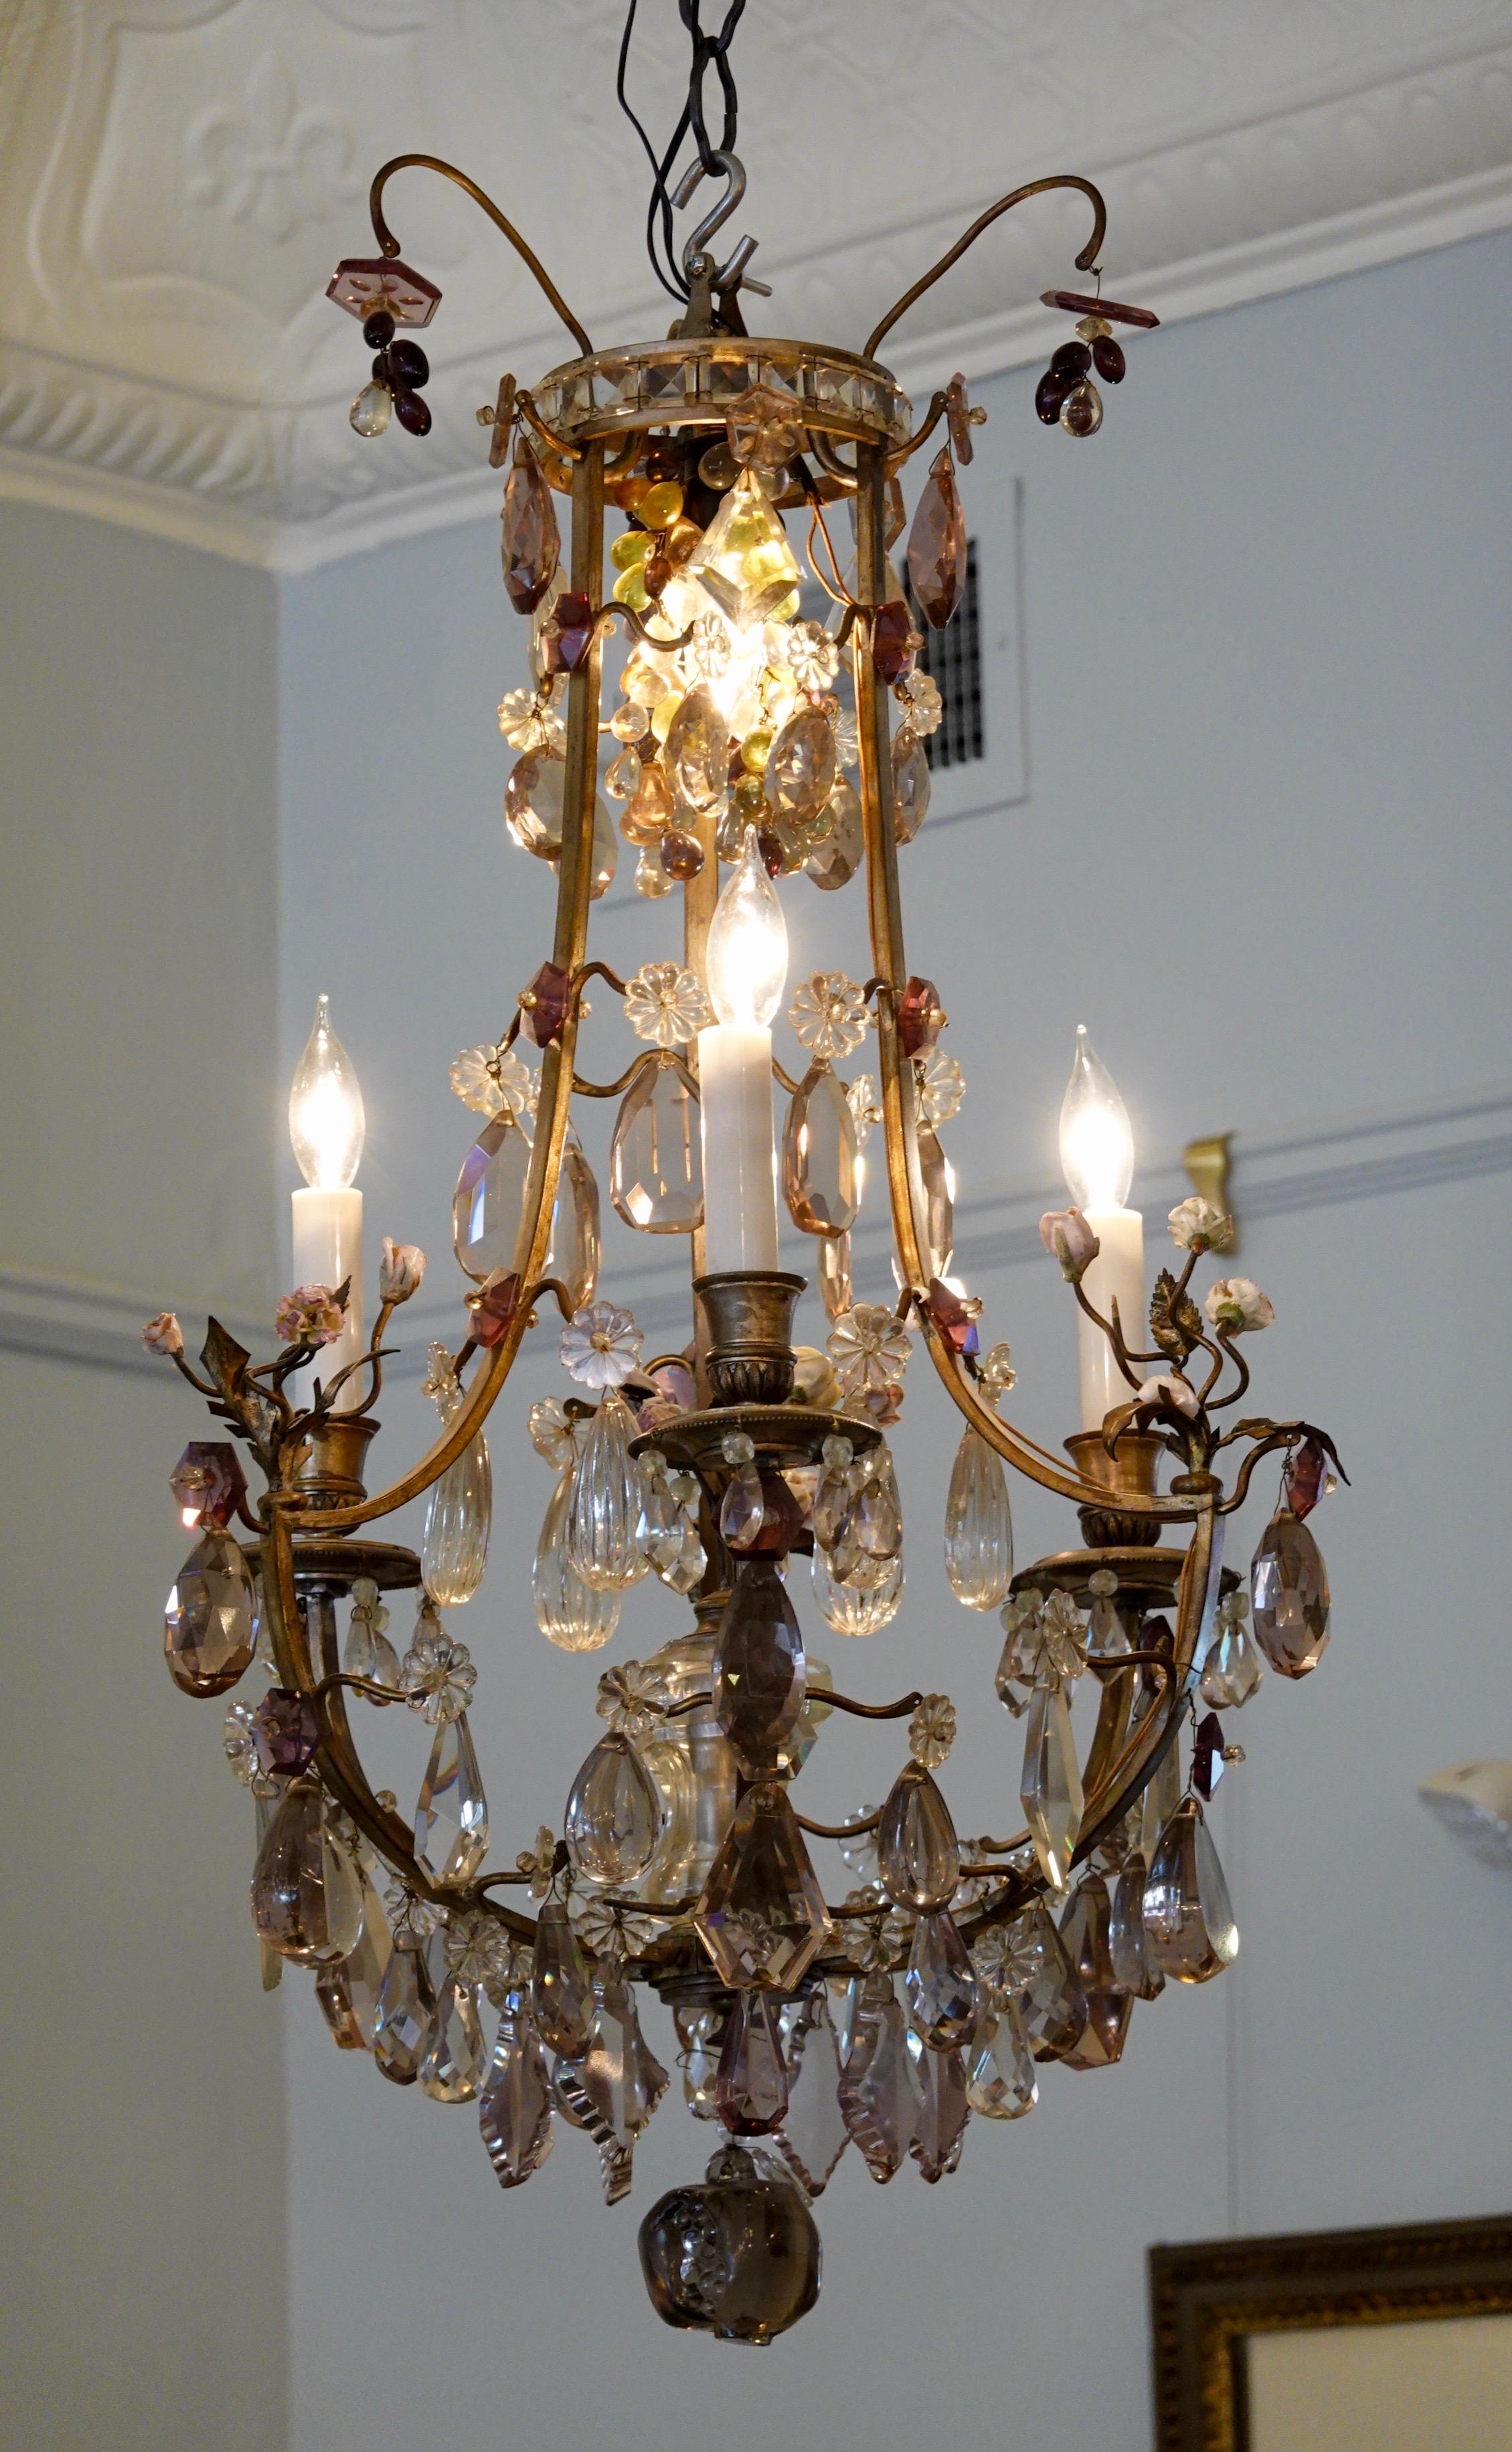 Französischer Kronleuchter aus Bronze und Kristall in Käfigform mit Porzellanblumen im Louis XVI-Stil, elektrifiziert mit vier Lichtern. Dieser Kronleuchter besteht aus drei Porzellanblumensträußen an den Hauptarmen und einem zentralen